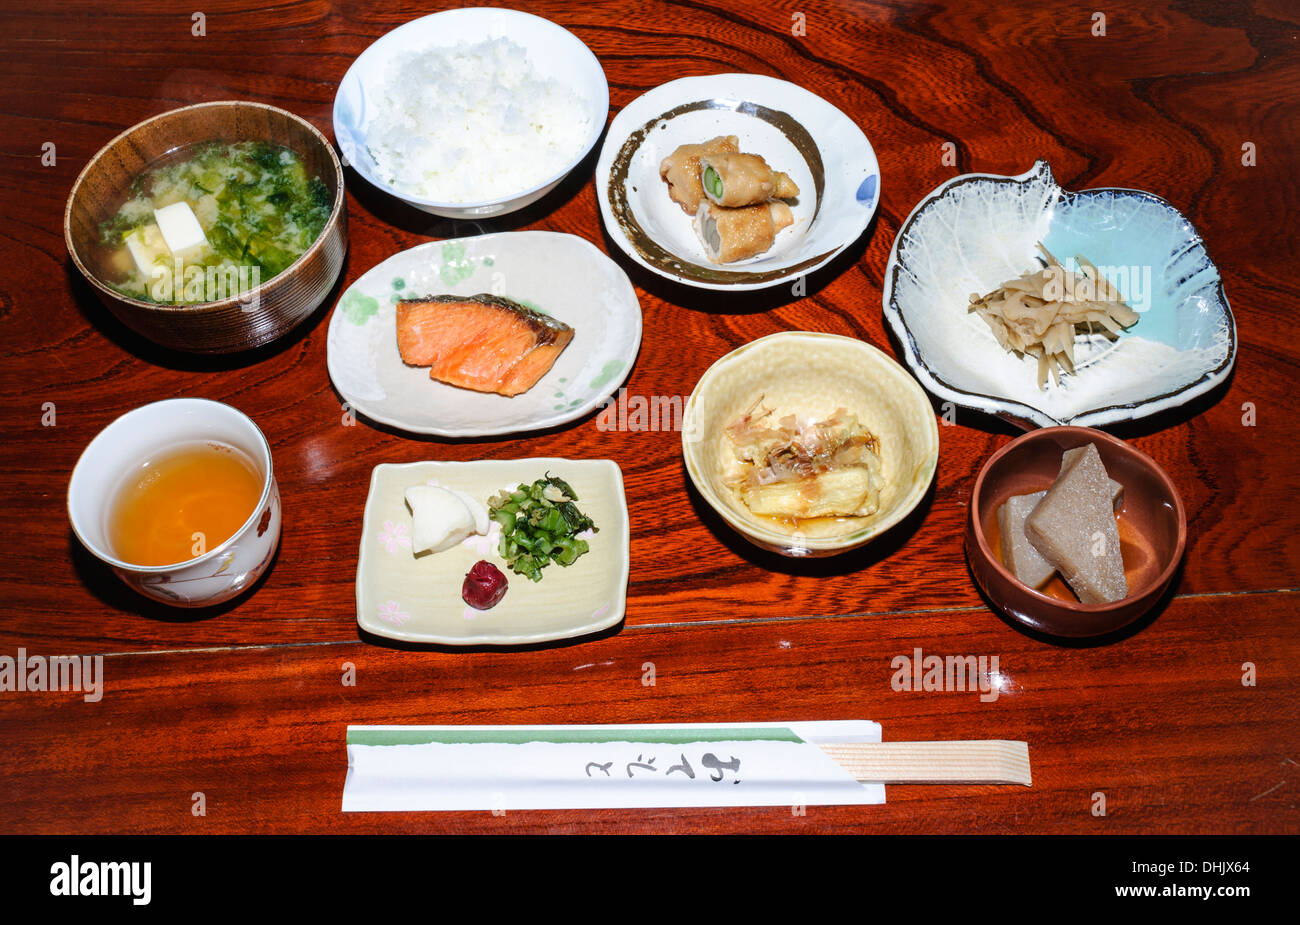 Washoku: Tradizionale colazione giapponese come pasto servito in un ryokan (stile tradizionale inn), con molti piatti serviti in una sola volta. Giappone, cibo. Foto Stock